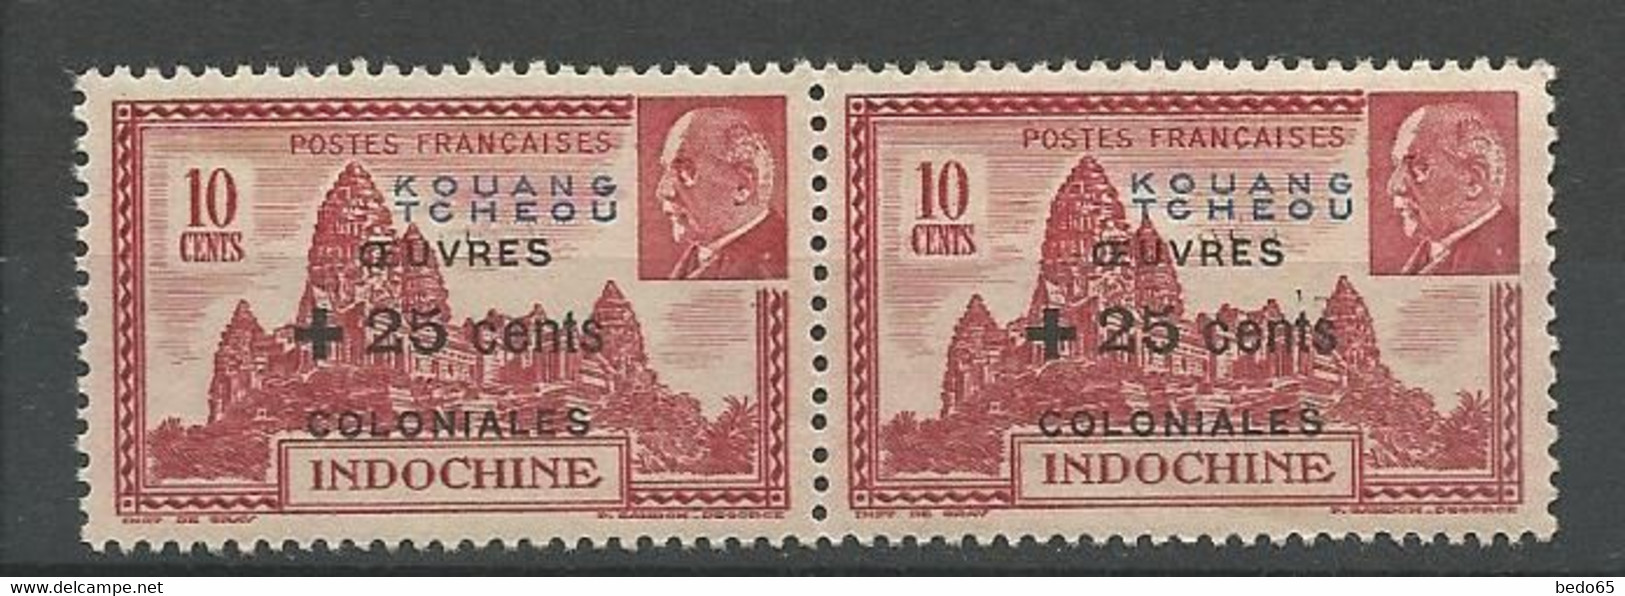 KOUANG-TCHEOU N° 156 Variétée K De KOUANG Déformé Tenant à Normal NEUF**  SANS CHARNIERE Petite Adhérence / MNH - Unused Stamps